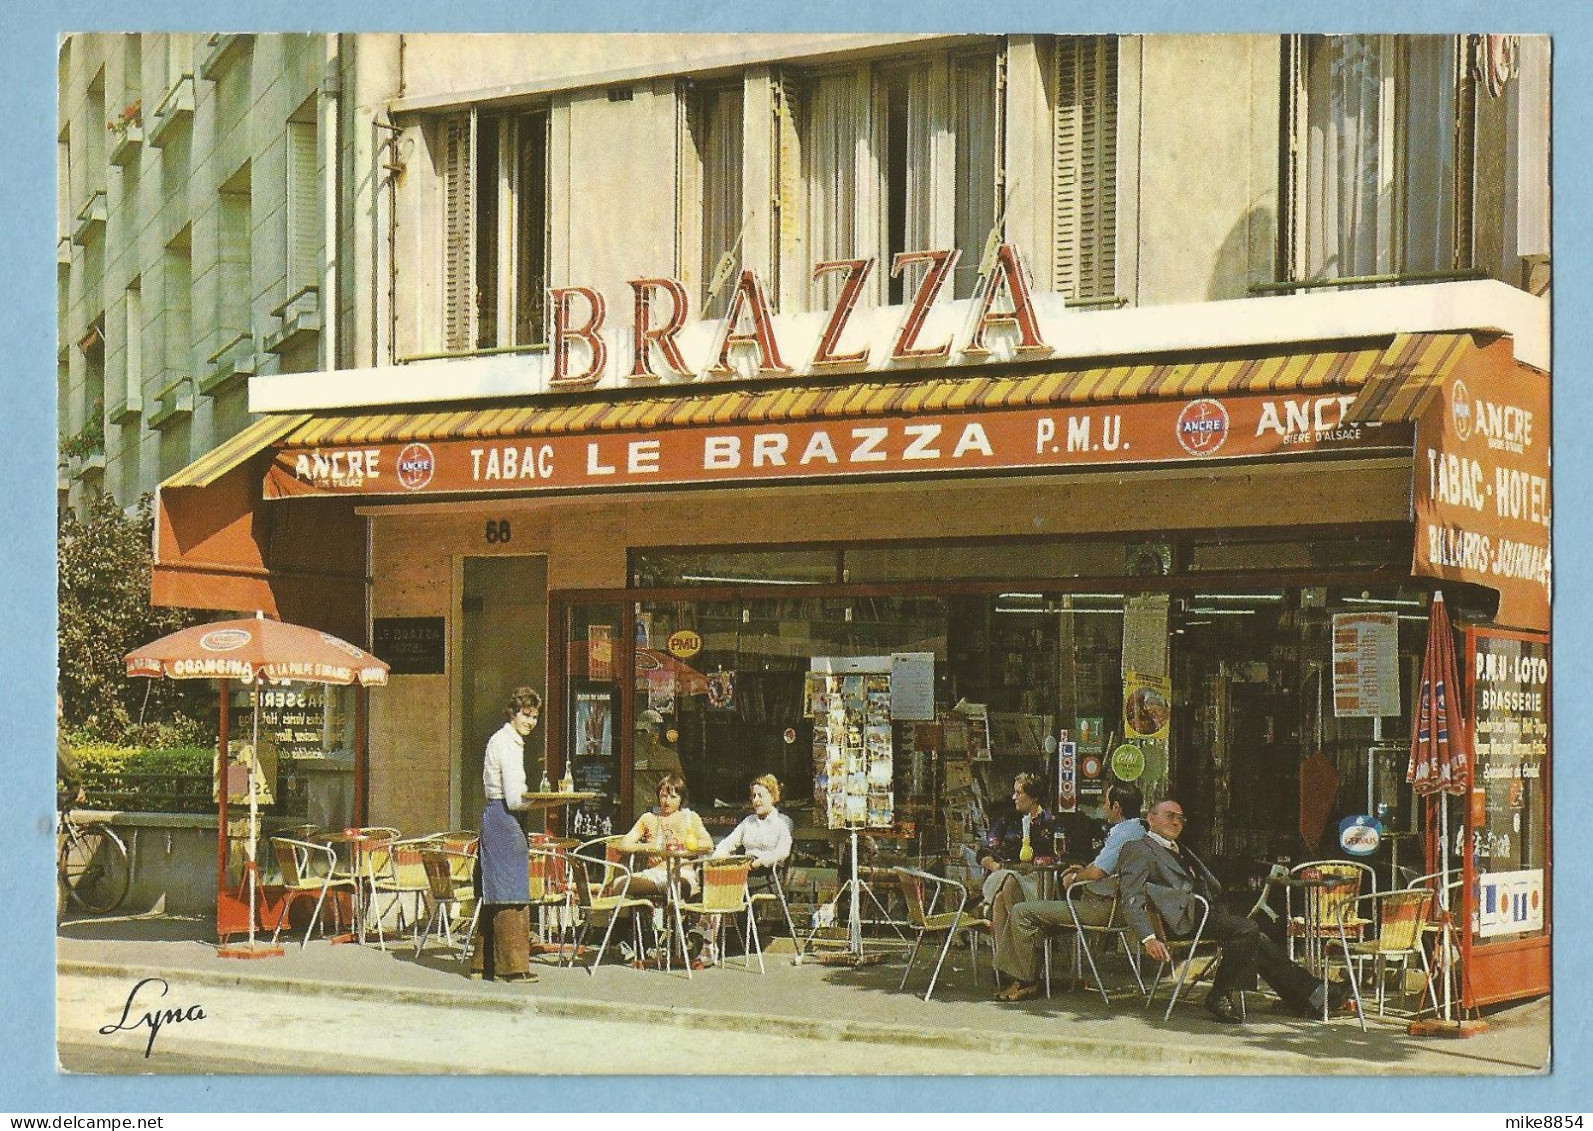 A108  CP   BOULOGNE  -  Tabacs - Journaux - Hôtel - LE BRAZZA  - Bière ANCRE - Photo  Rolf WALTER  ++++ - Boulogne Billancourt